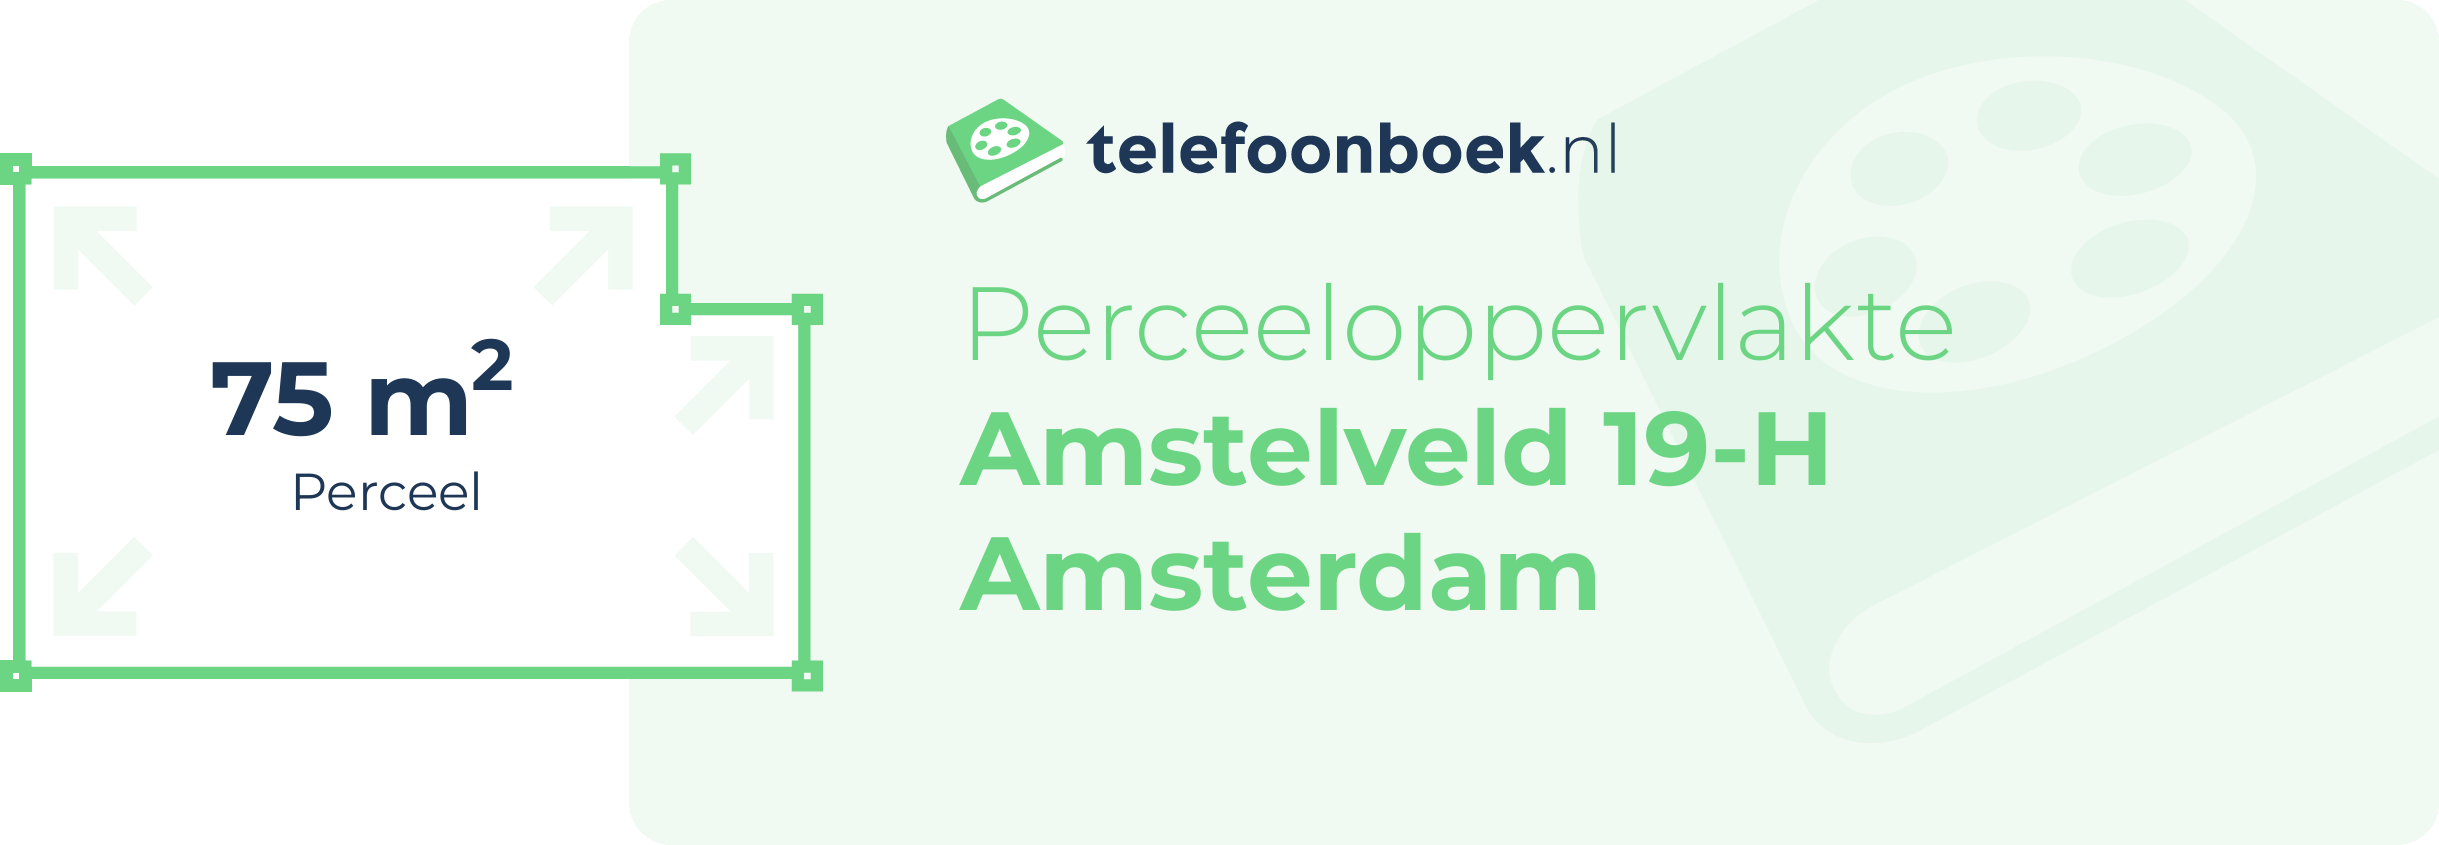 Perceeloppervlakte Amstelveld 19-H Amsterdam